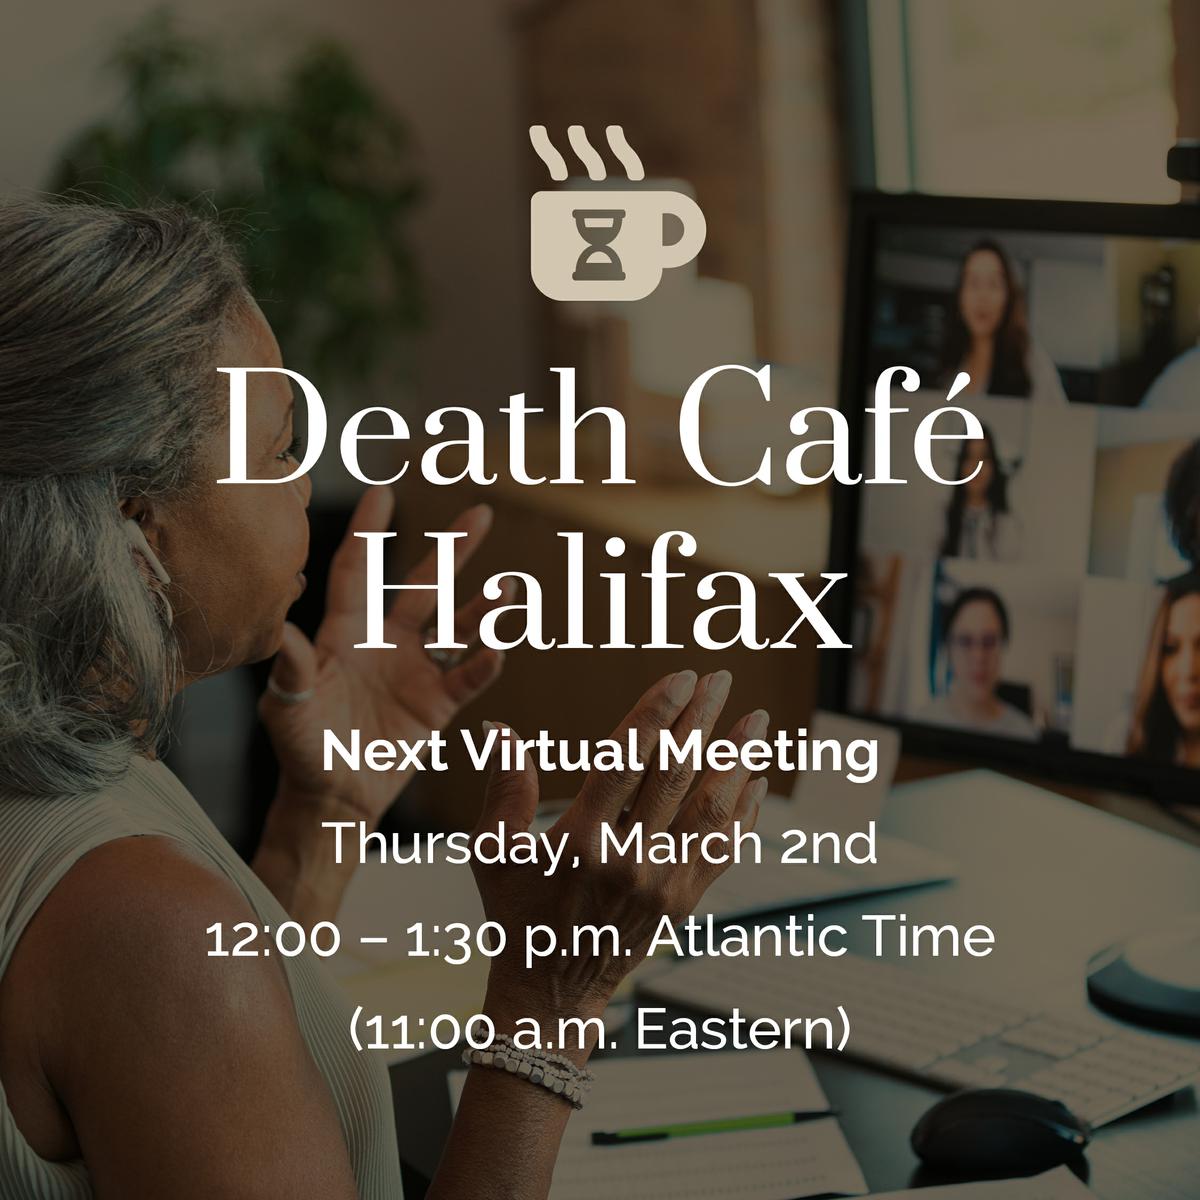 Death Cafe Halifax Online AST